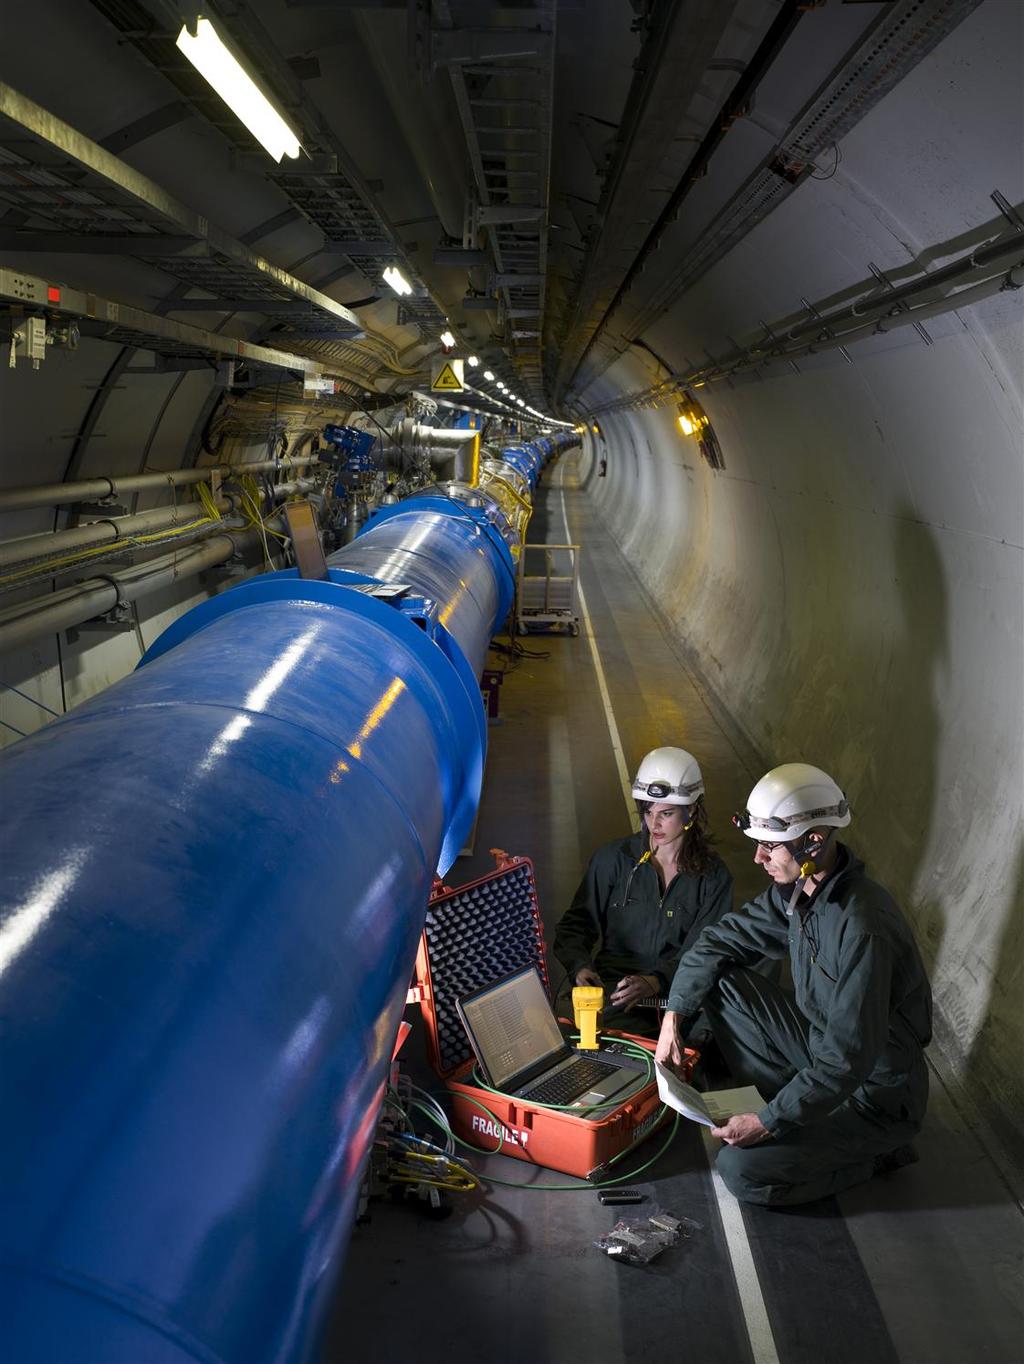 Il Large Hadron Collider I protoni sono accelerati da potenti campi elettrici fino a velocità prossime a quella della luce Sono guidati lungo le loro traiettorie da potenti magneti superconduttori Il